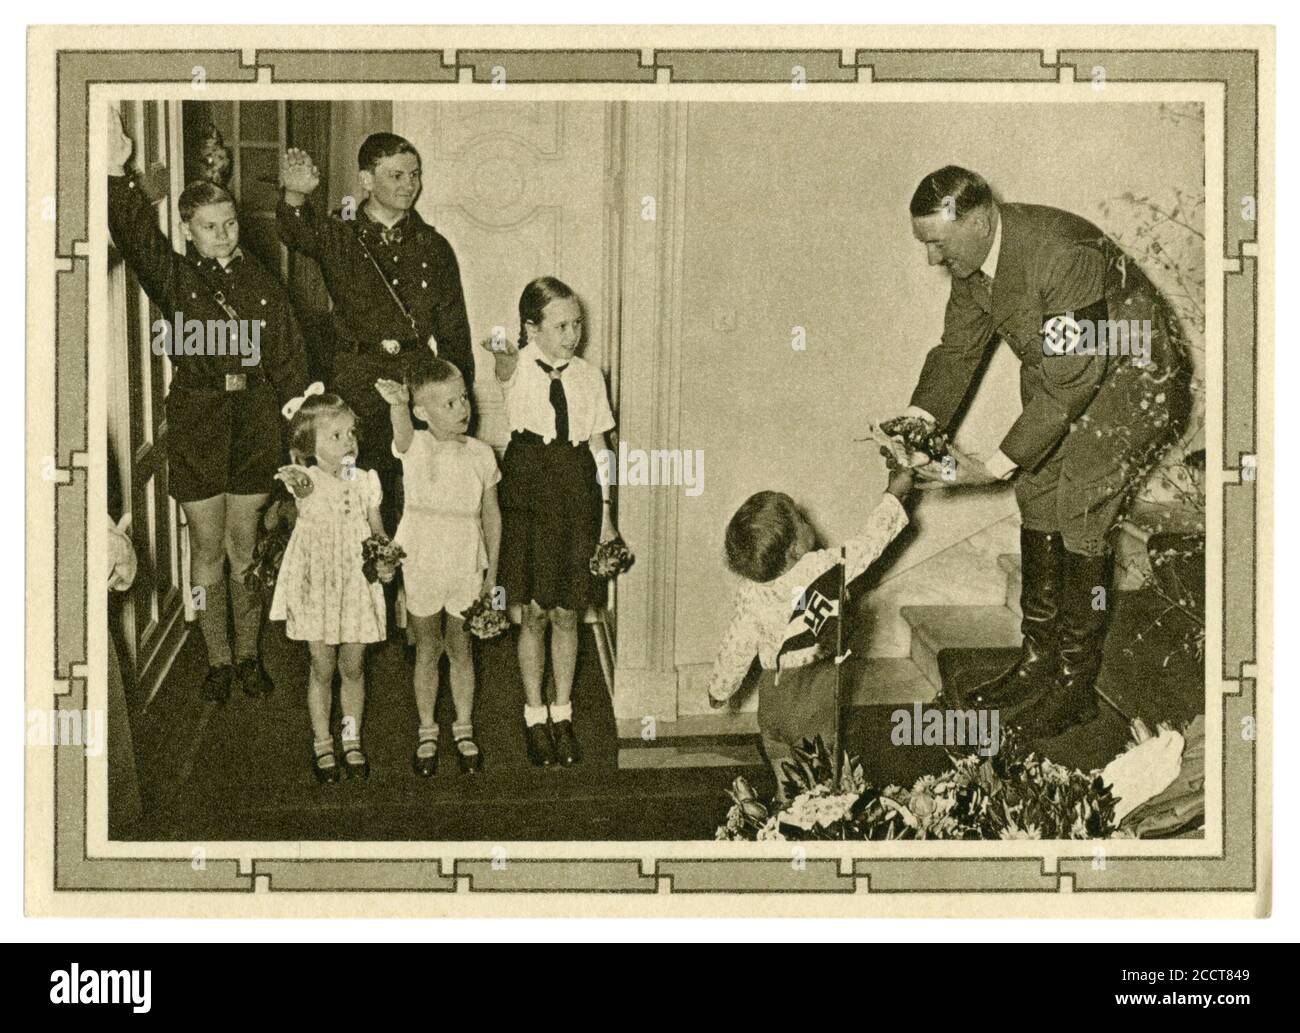 Carte postale historique allemande : 50e anniversaire d'Adolf Hitler. Il reçoit un bouquet de fleurs du plus jeune des 6 enfants de Goebbels, Allemagne, 1939 Banque D'Images